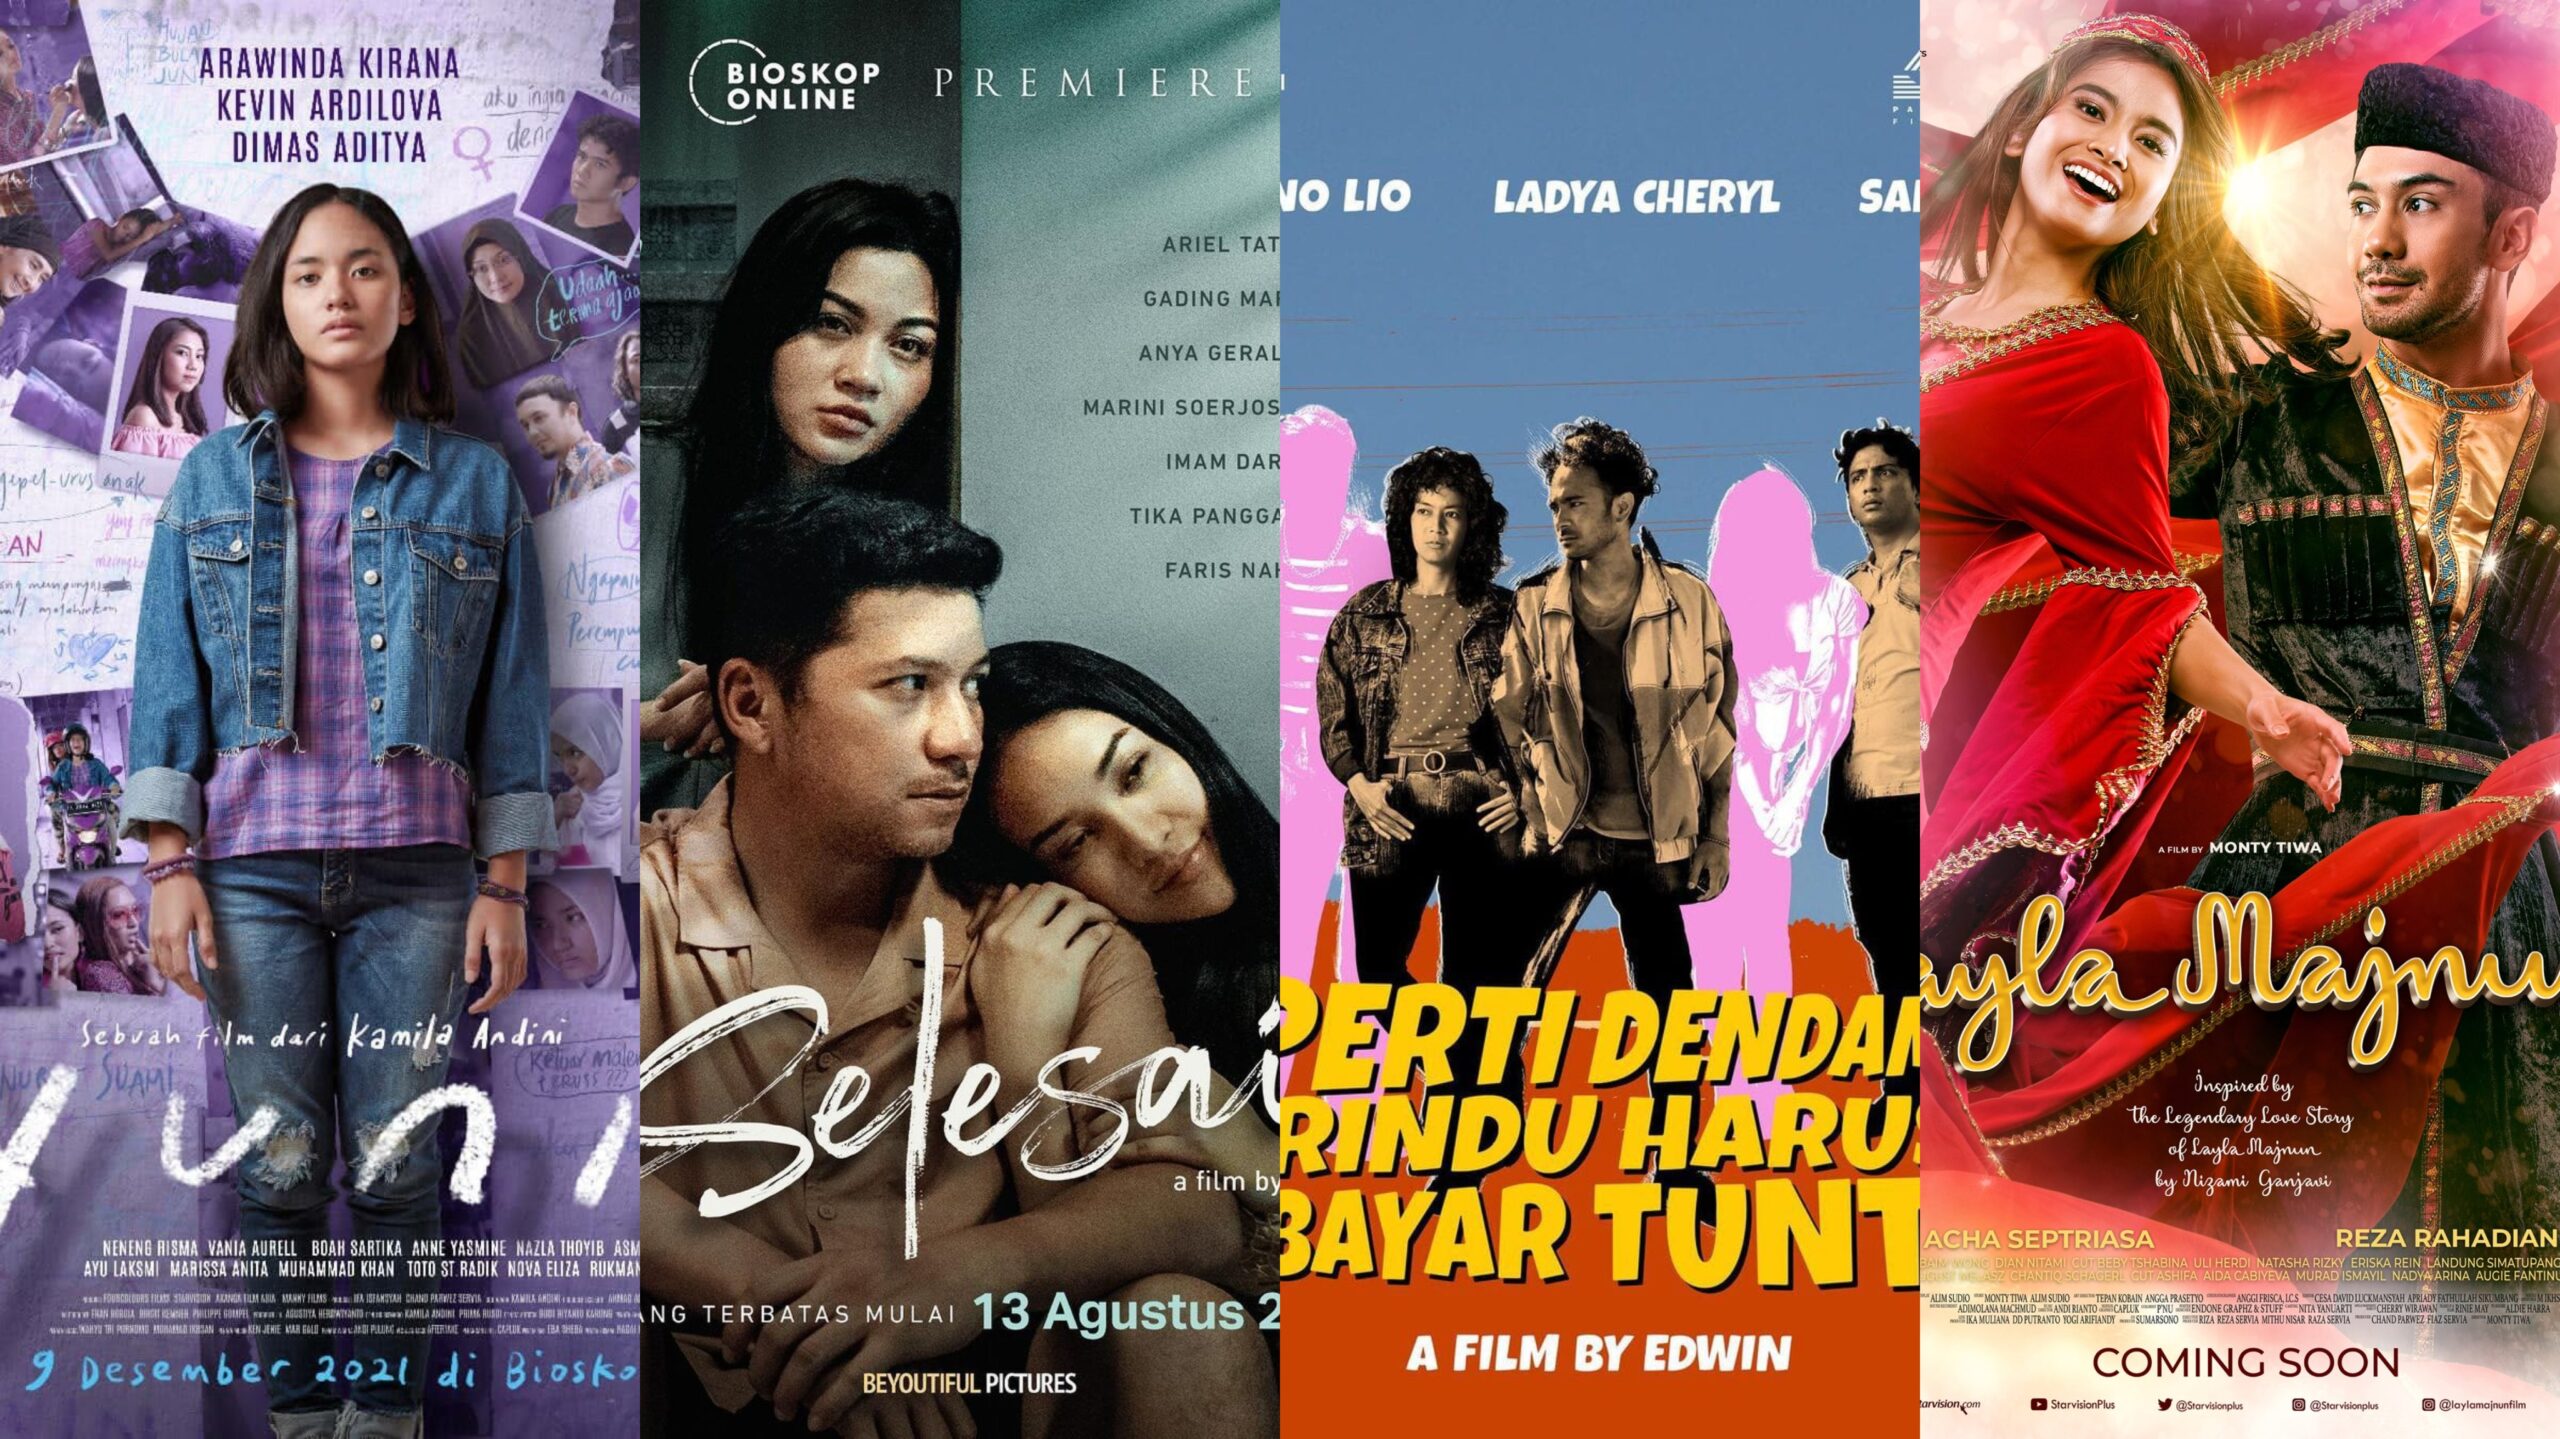 16 Film Indonesia Terbaru yang Paling Banyak Ditonton, Ada Apa Saja?